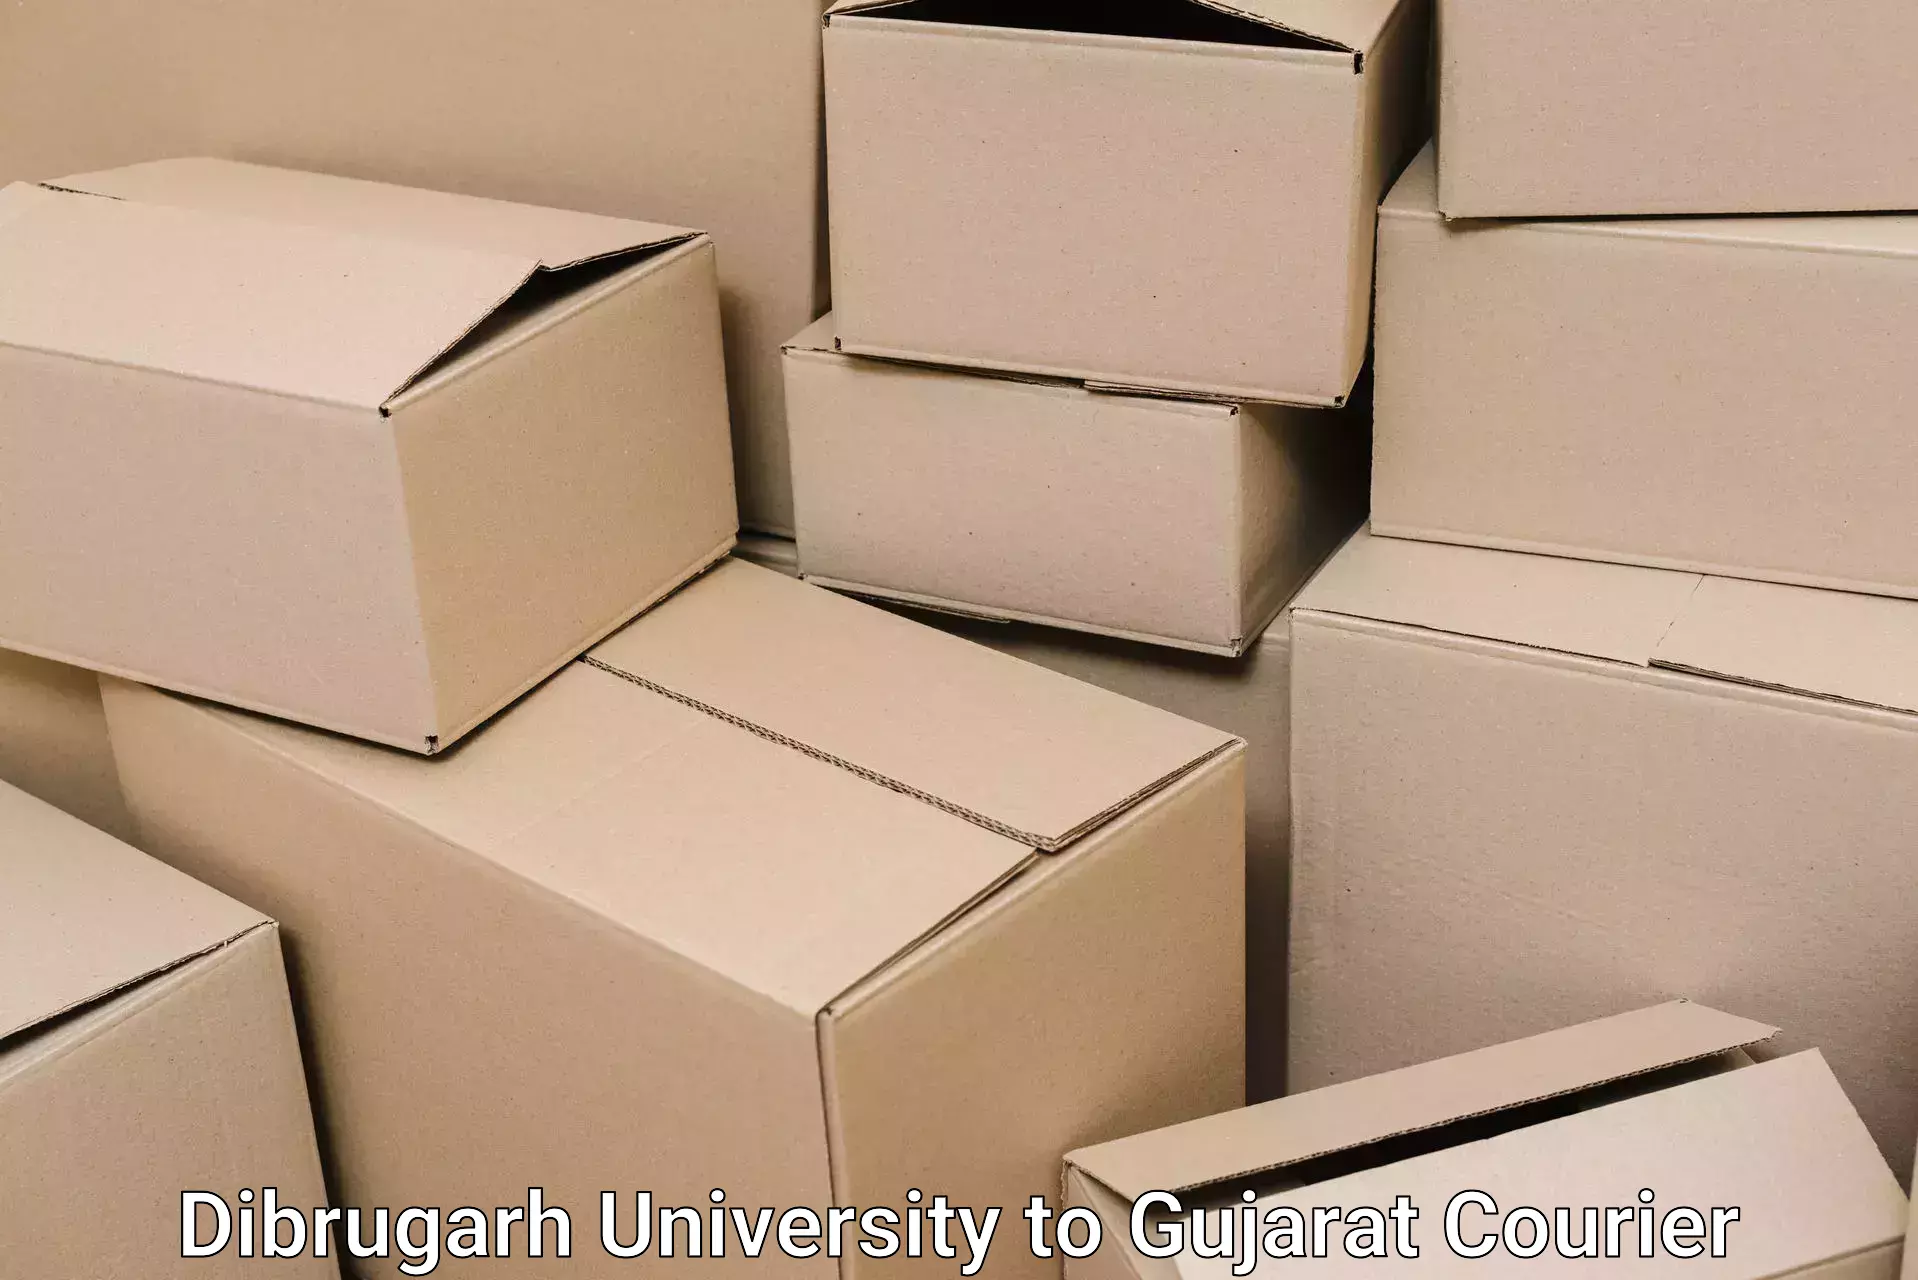 Furniture moving experts Dibrugarh University to Gujarat